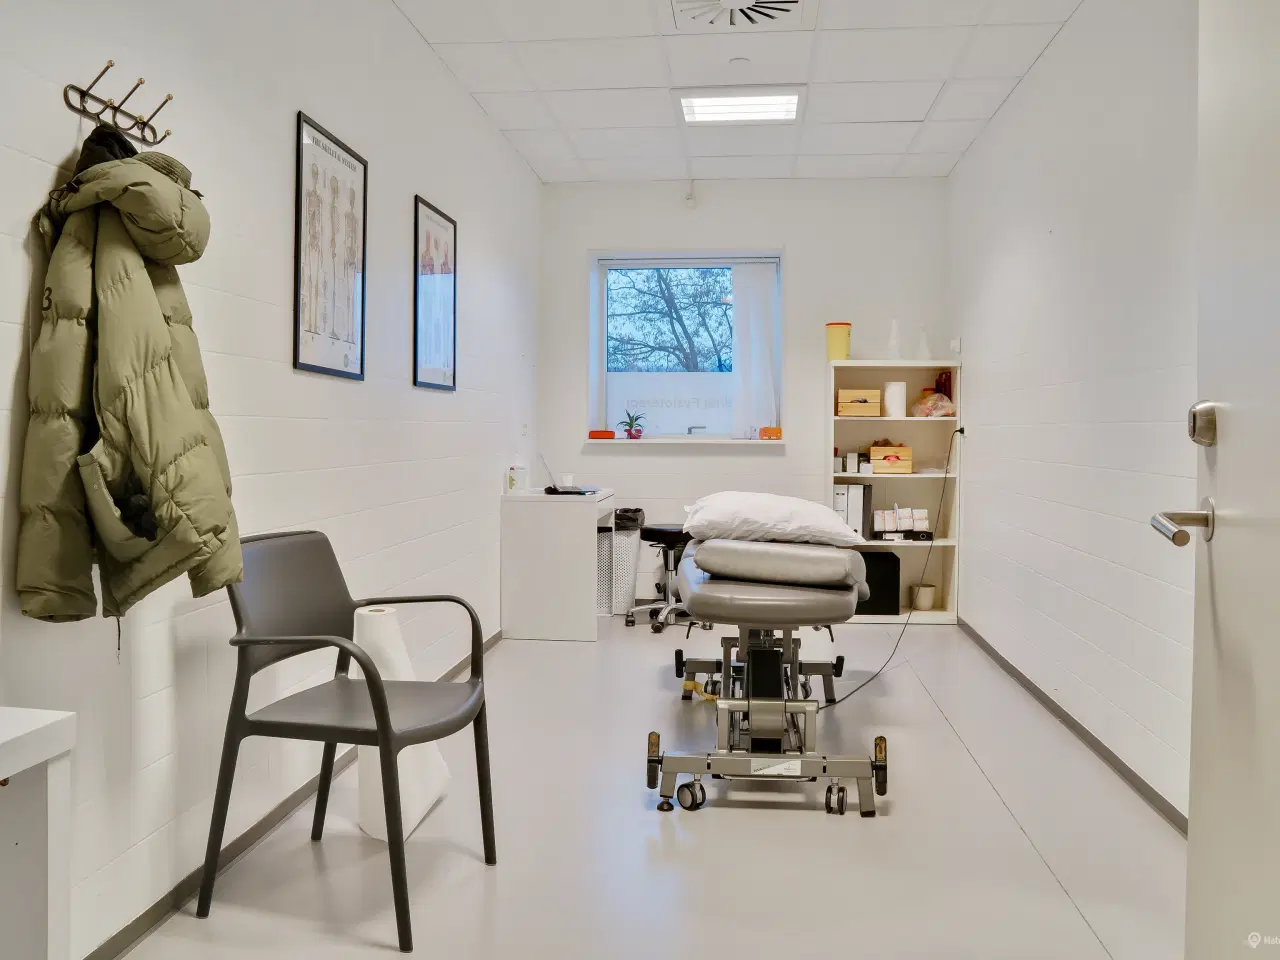 Billede 8 - Kliniklokaler/behandlerrum i moderne Sundhedshus Brøndby